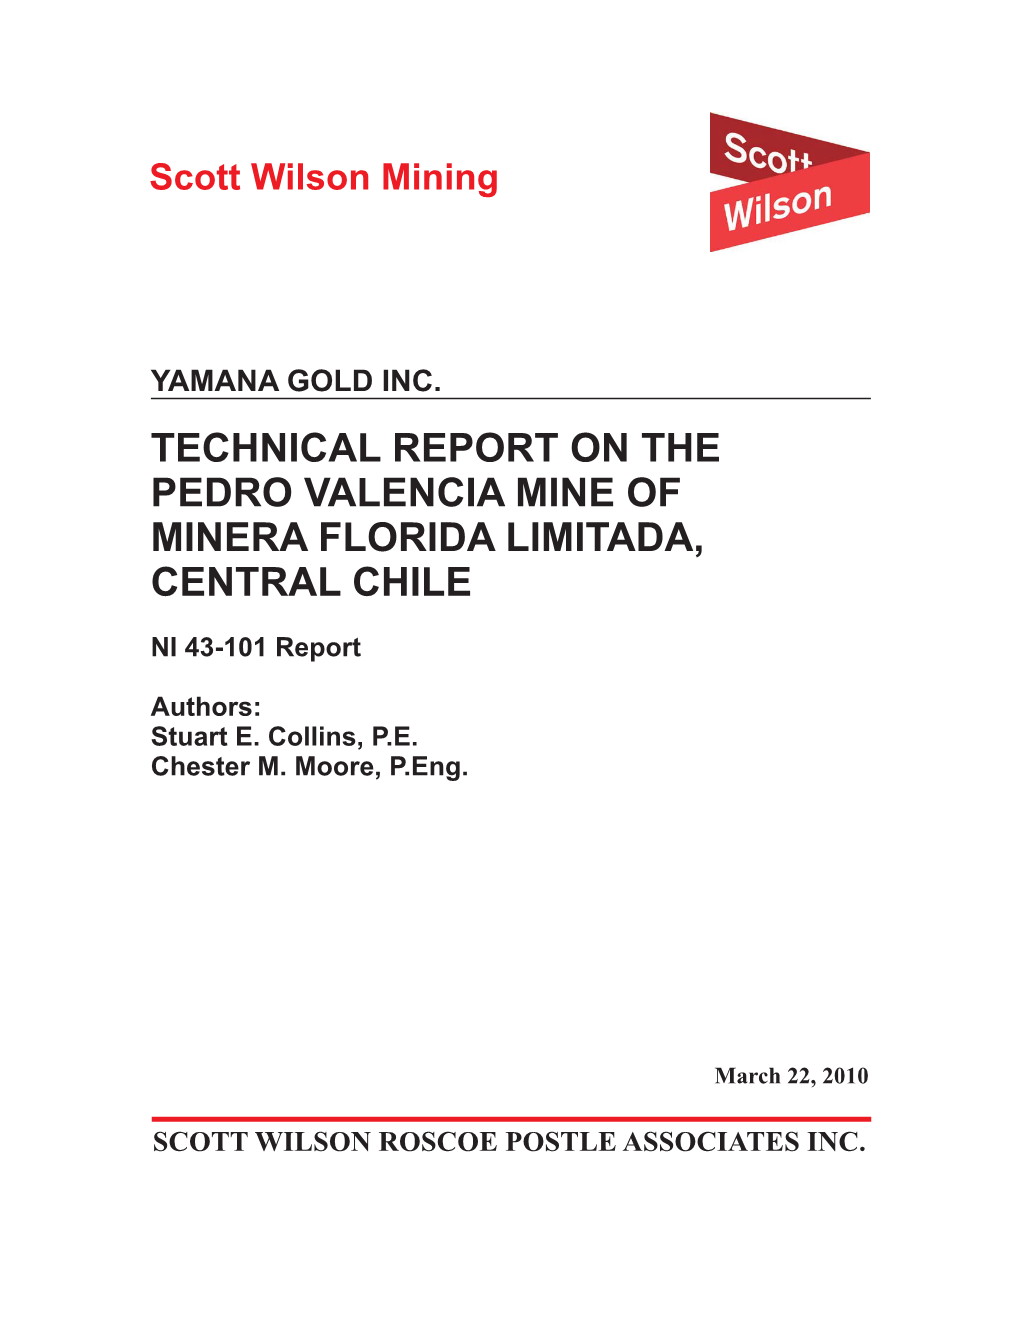 Technical Report on the Pedro Valencia Mine of Minera Florida Limitada, Central Chile